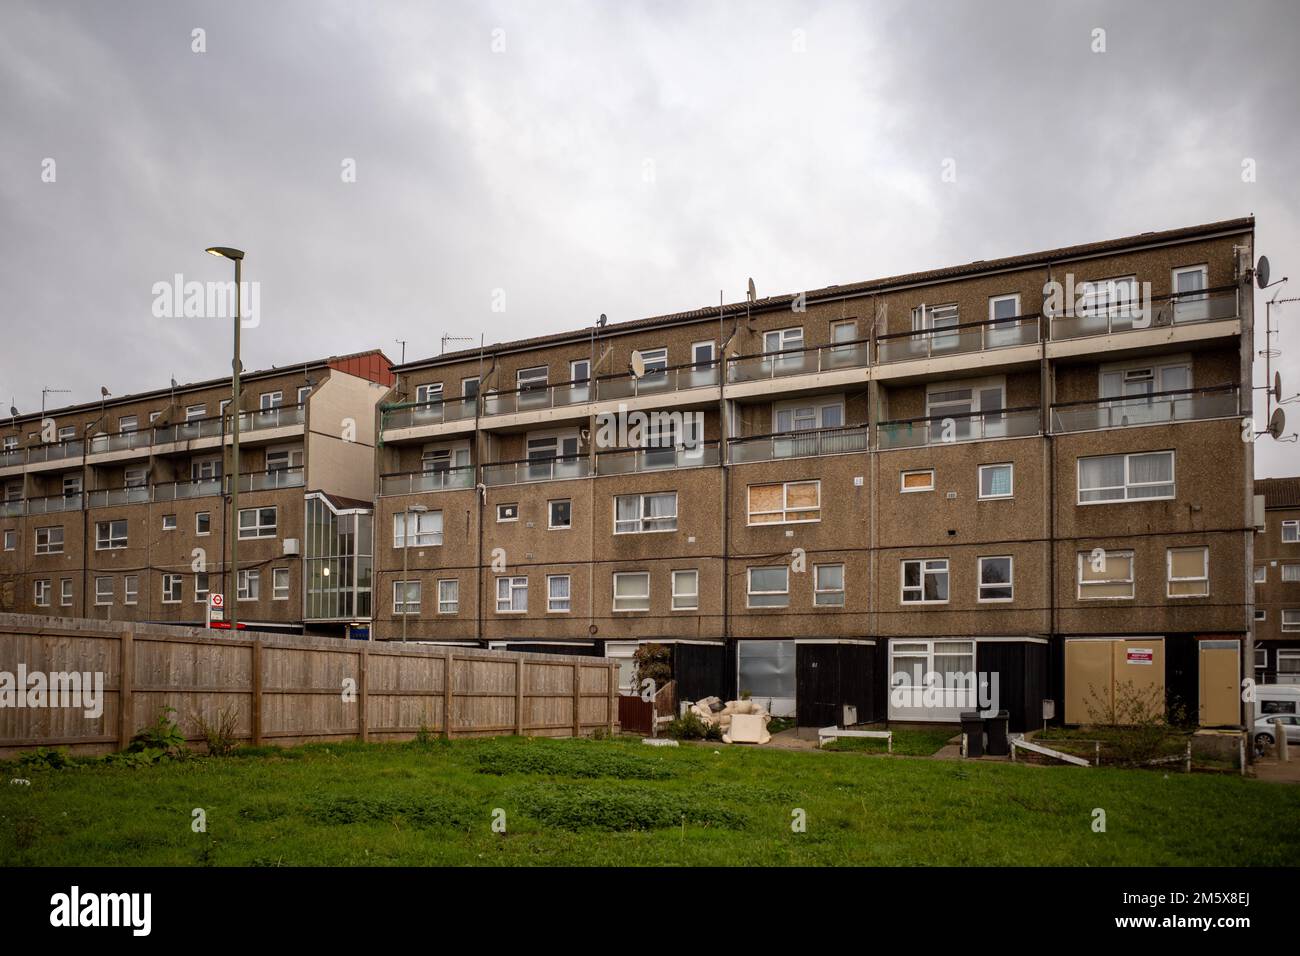 Dolis Valley Housing Estate, construit dans les années 1960 et 1970, situé près de High Barnett, dans le nord de Londres, en cours de réaménagement. Maison de Londres d'après-guerre. Banque D'Images